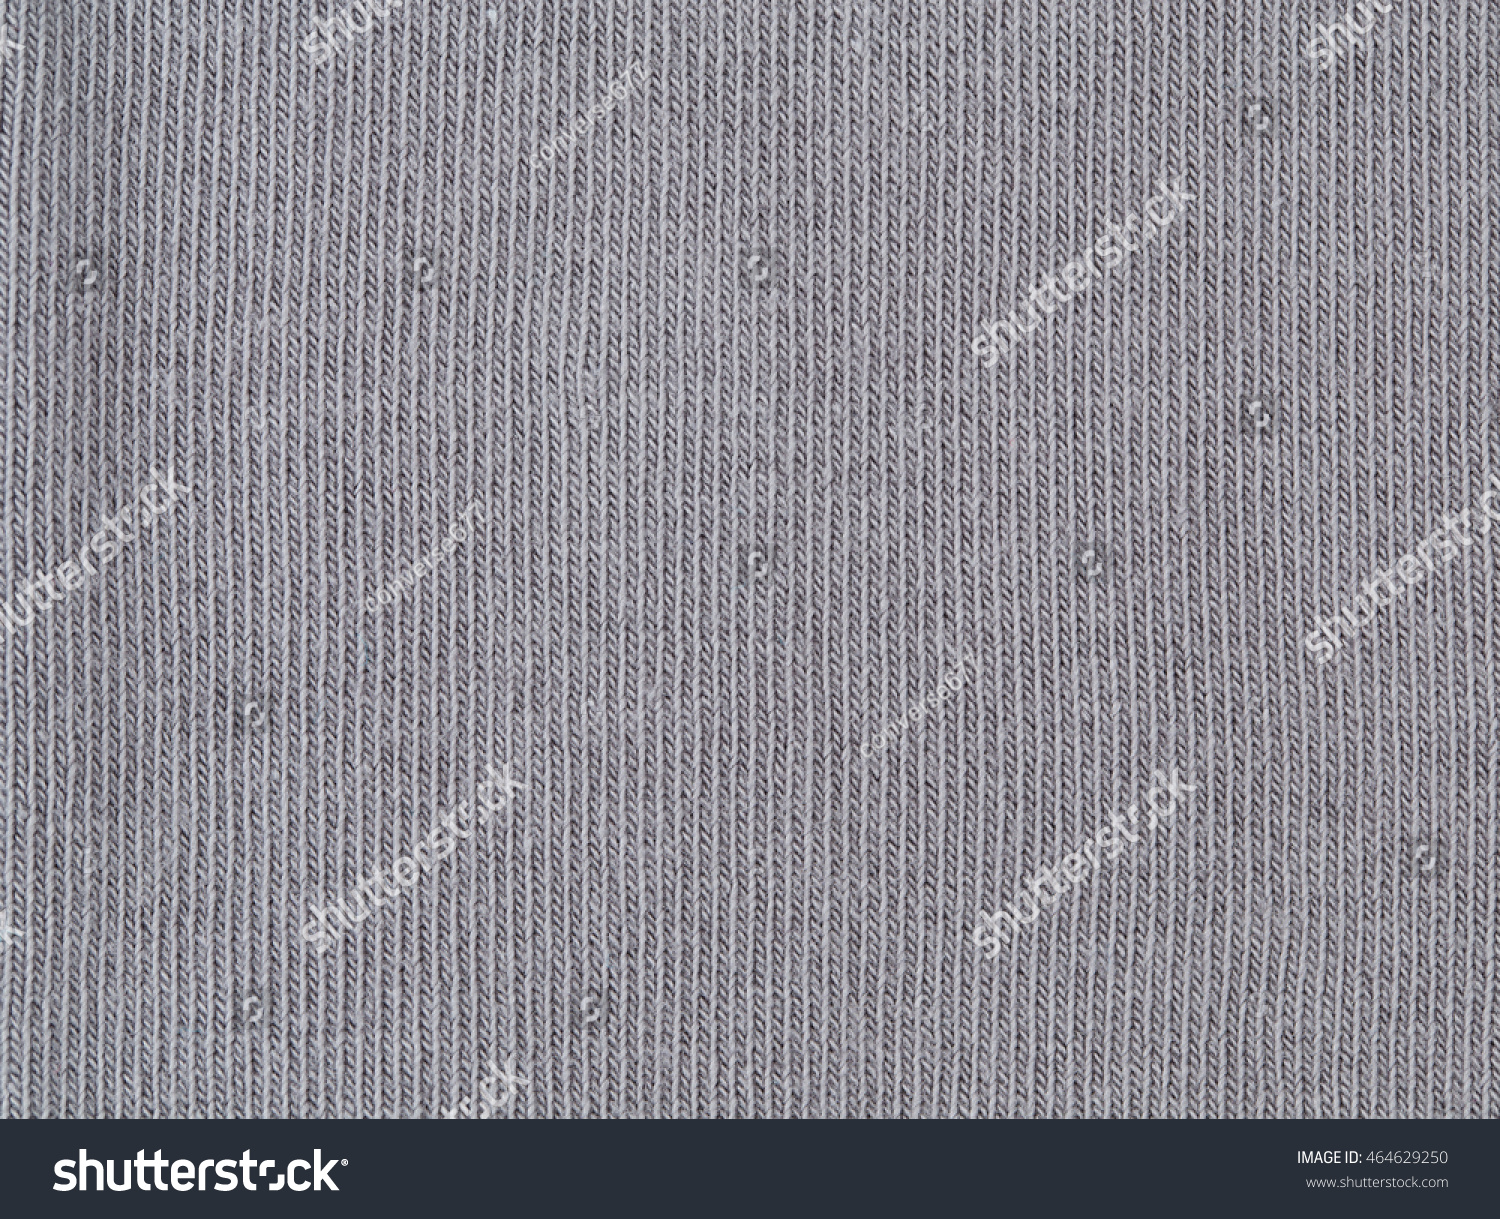 61,801 Sock texture Images, Stock Photos & Vectors | Shutterstock